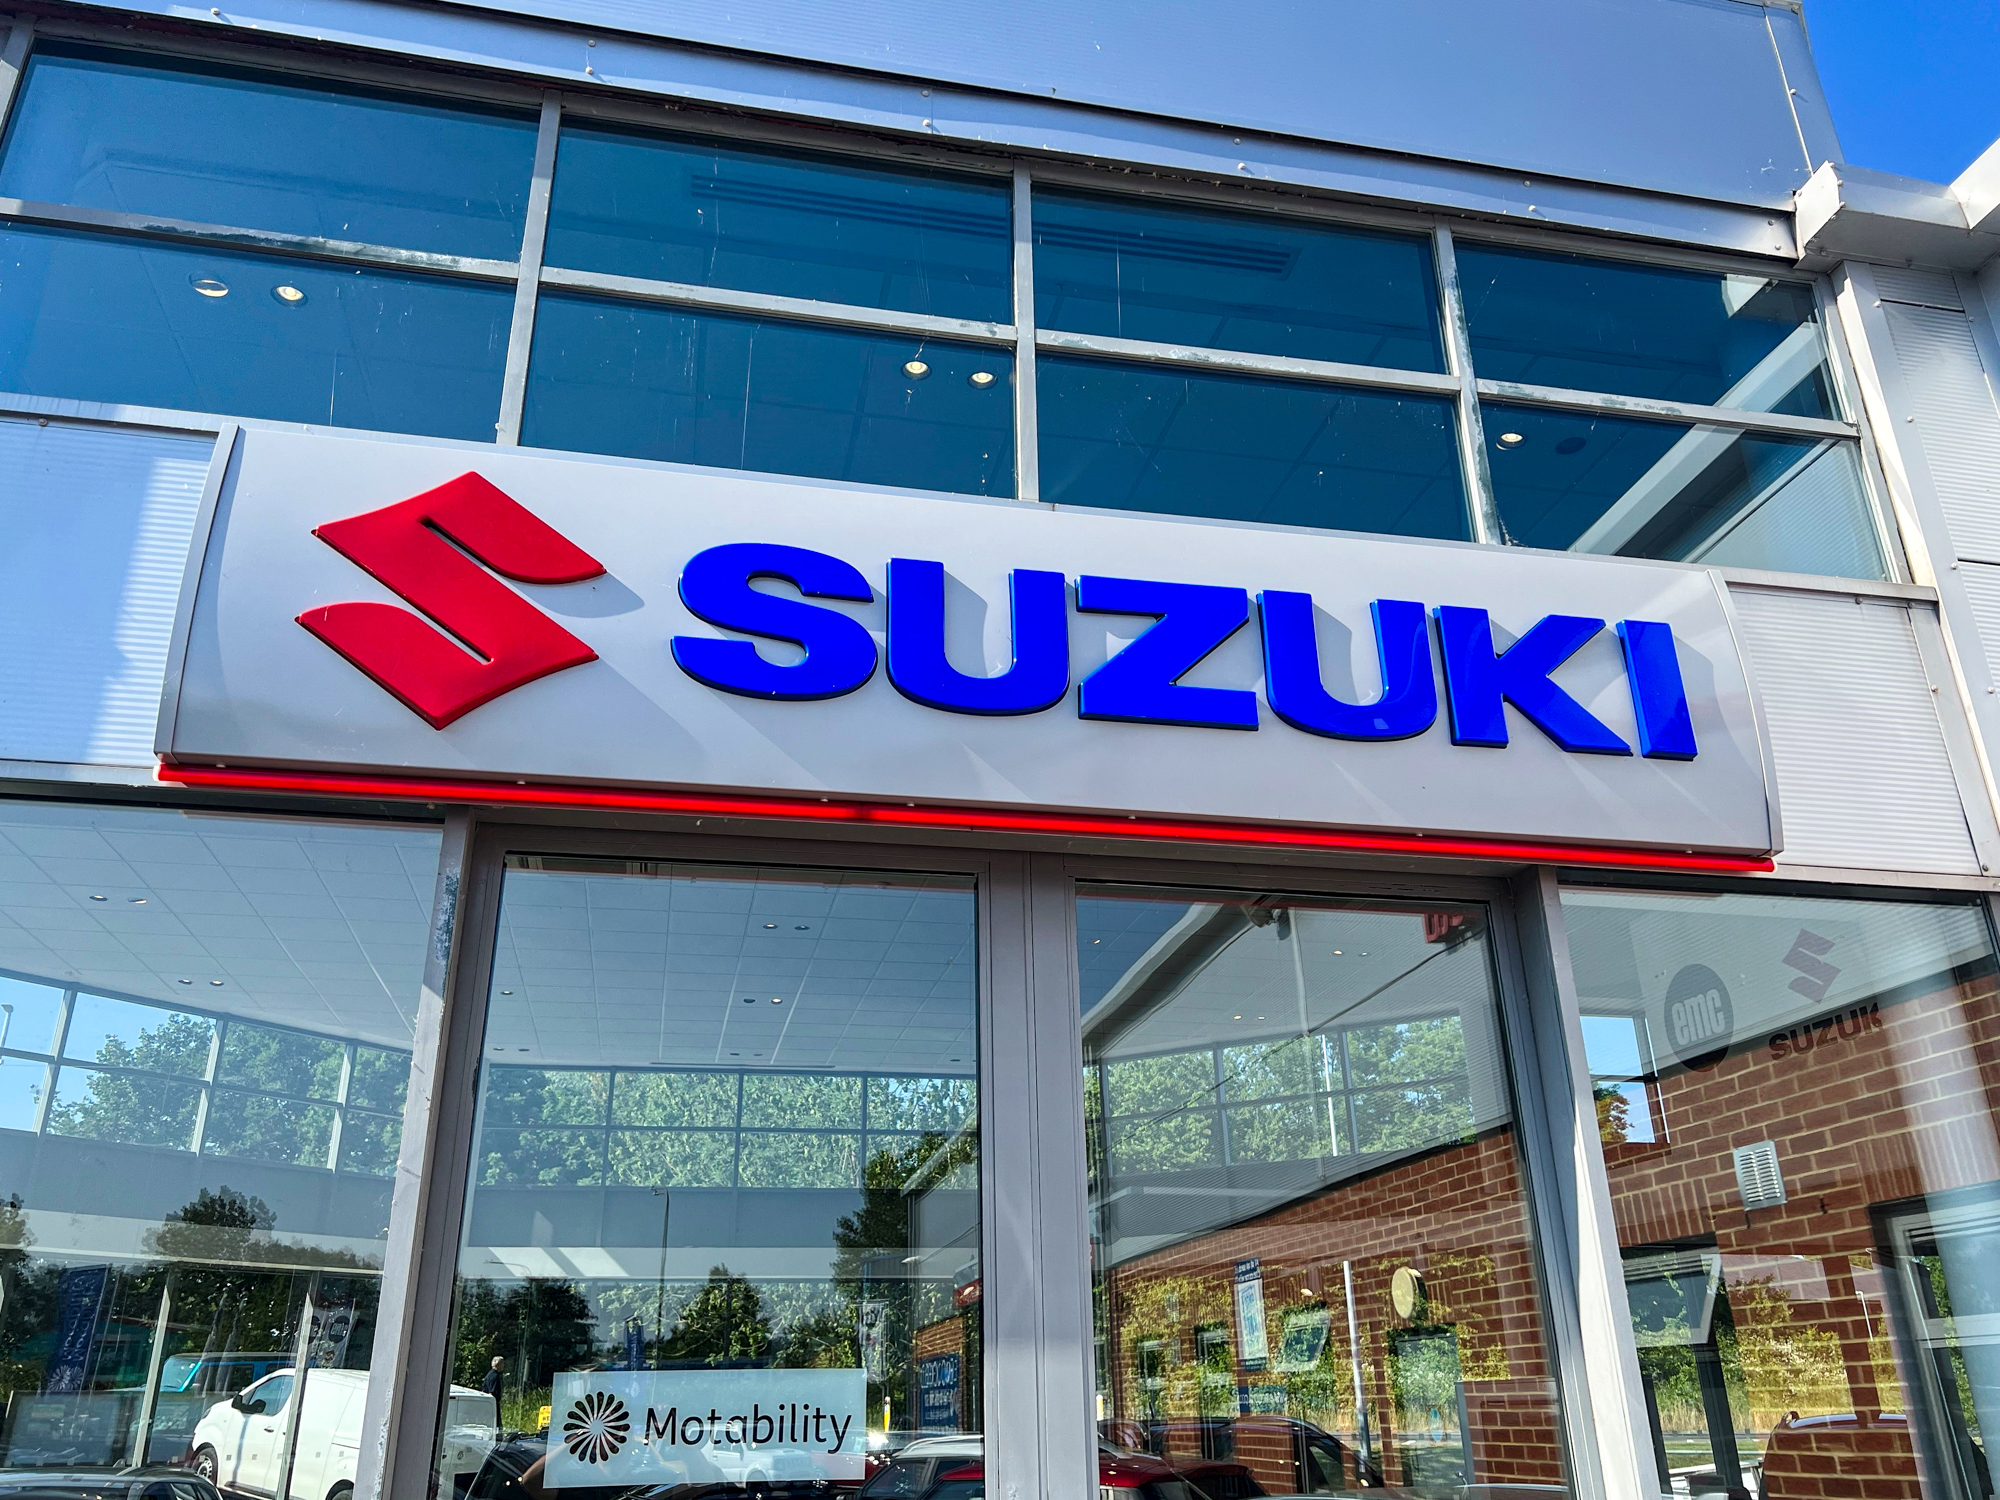 Suzuki sign over door